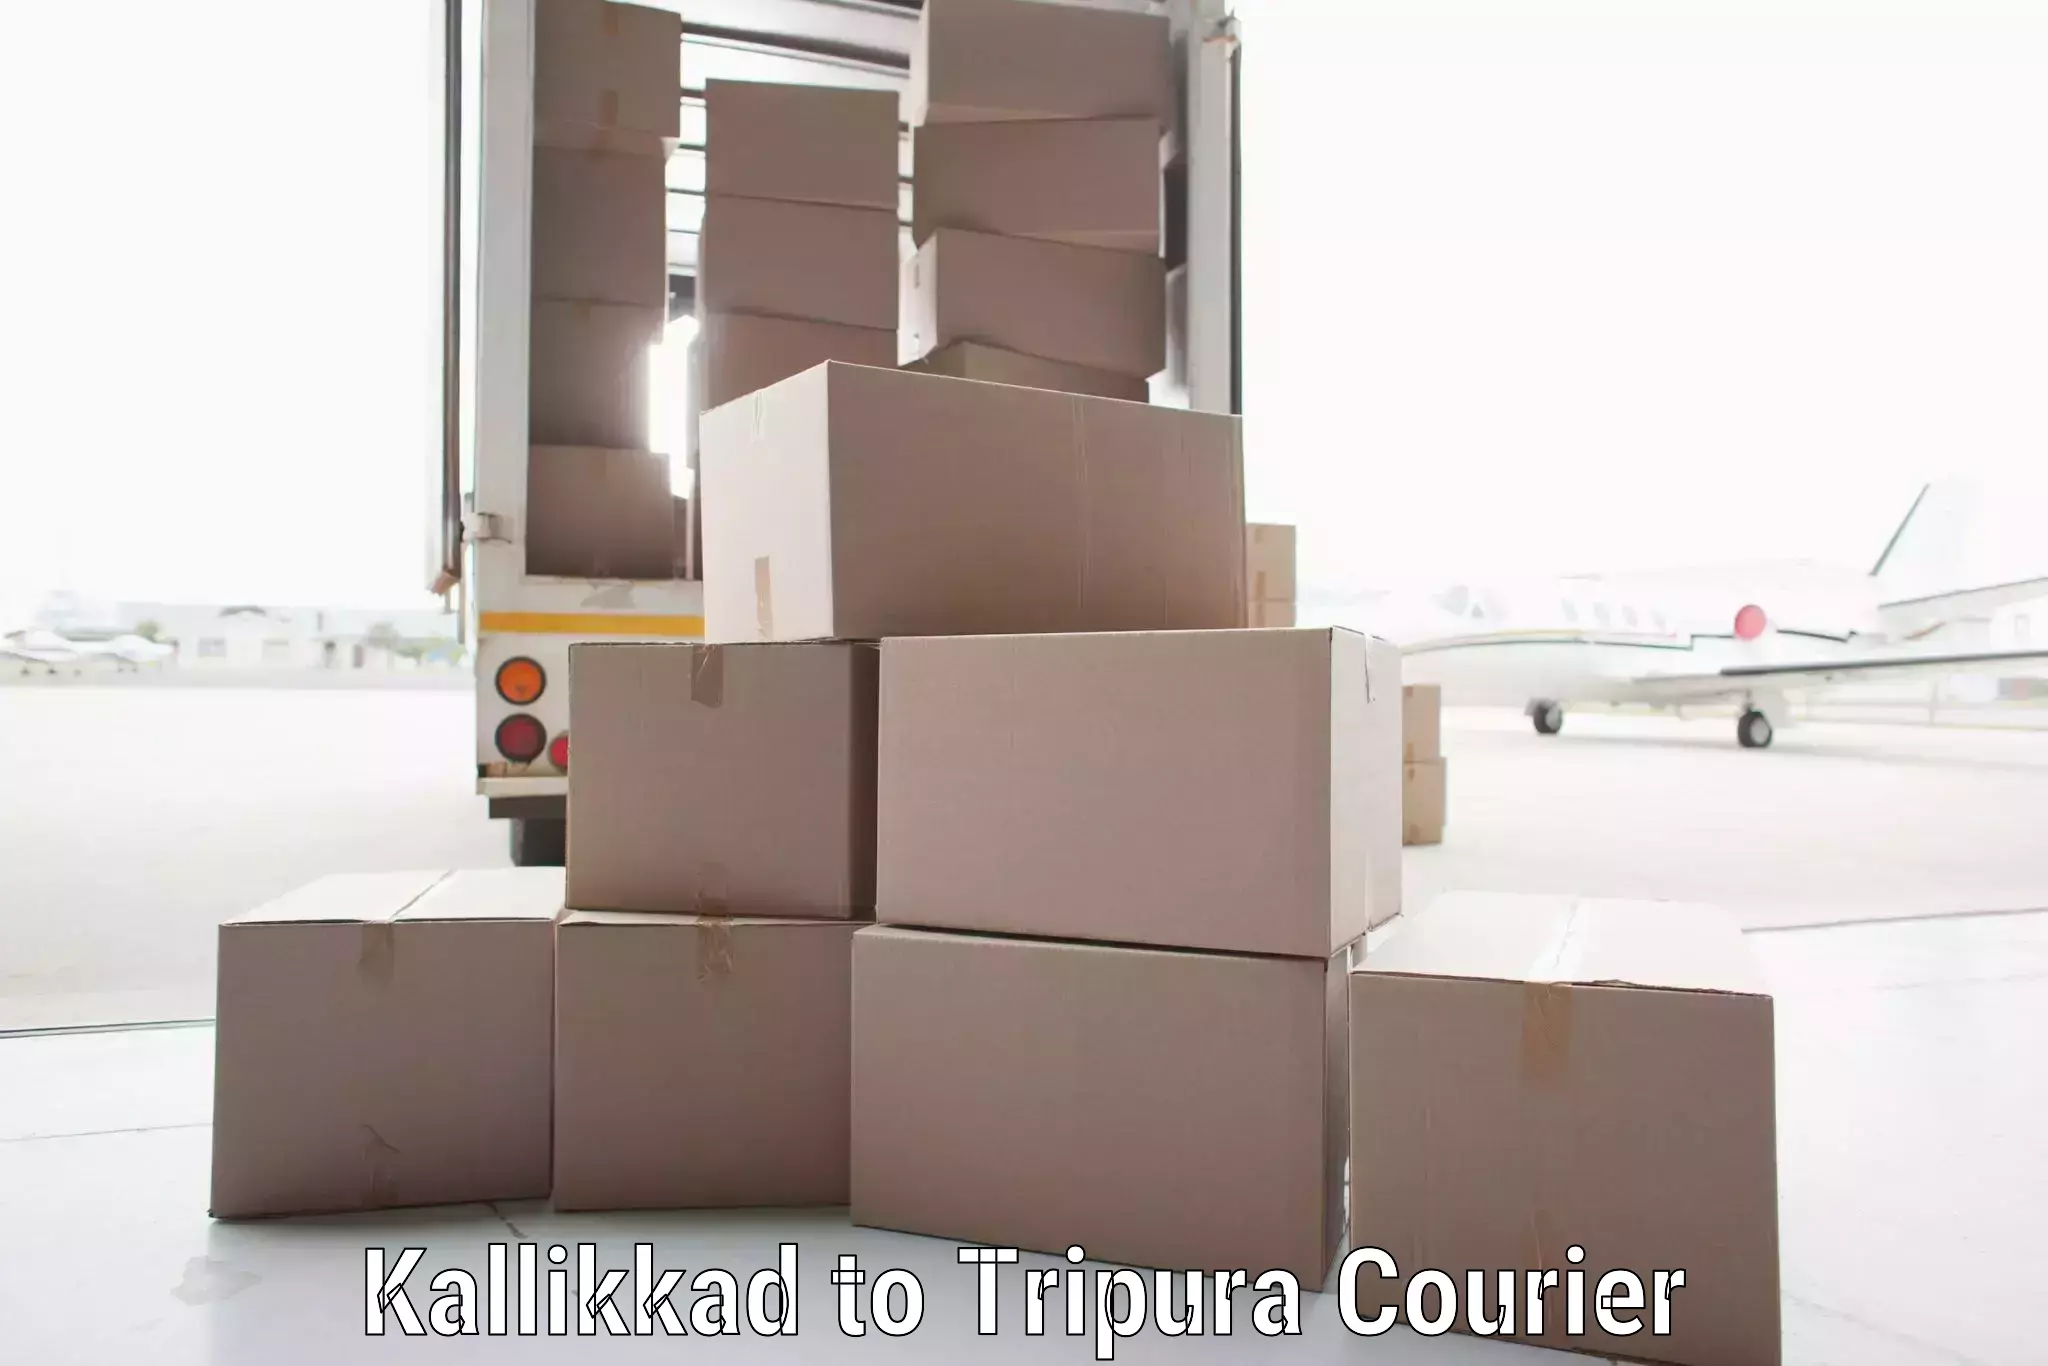 Bulk courier orders Kallikkad to Tripura